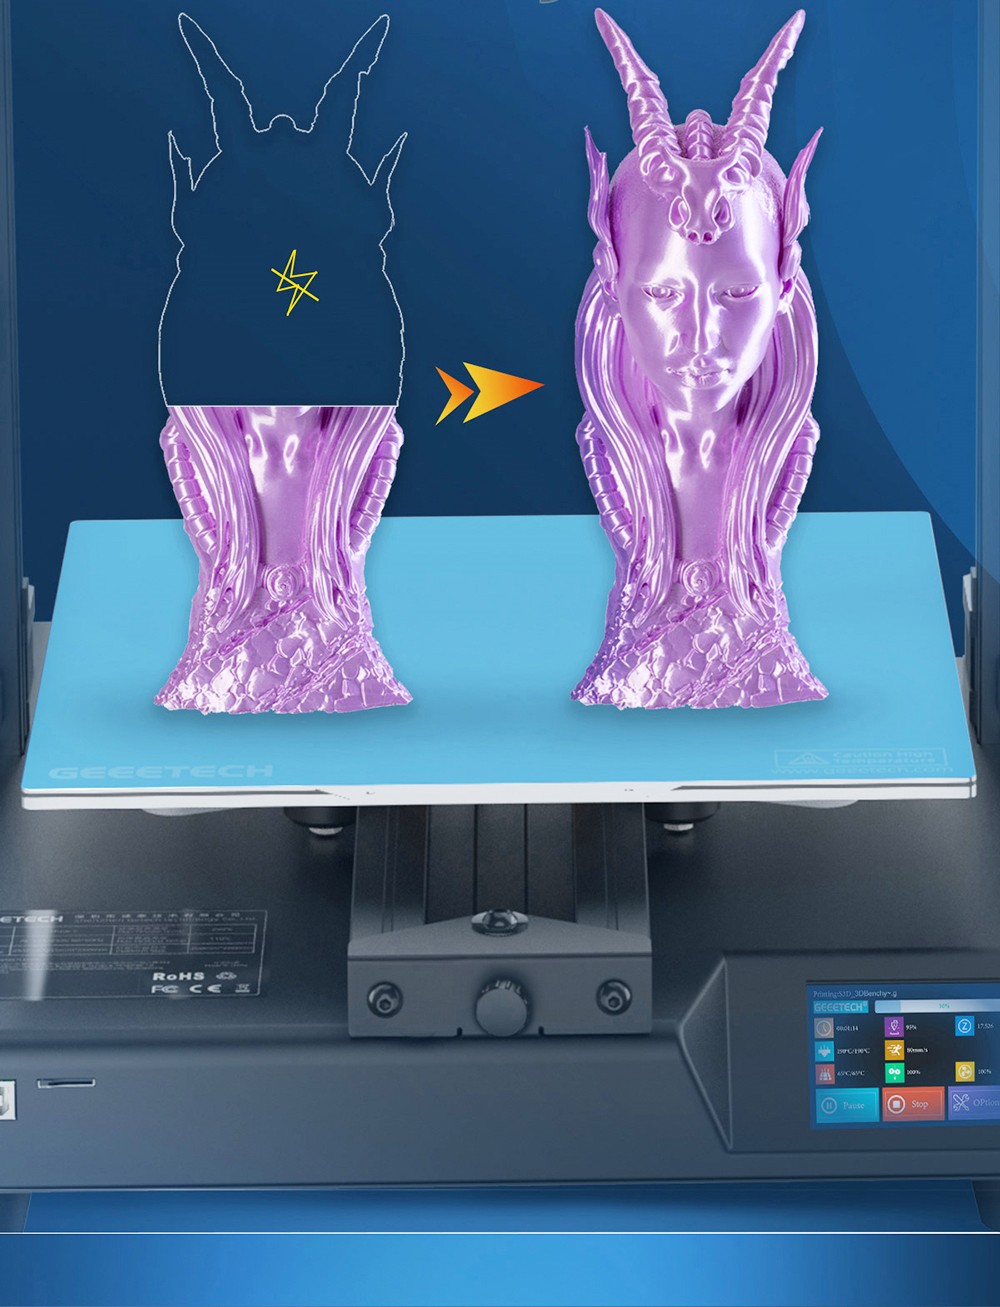 Geeetech Mizar S 3D-Drucker